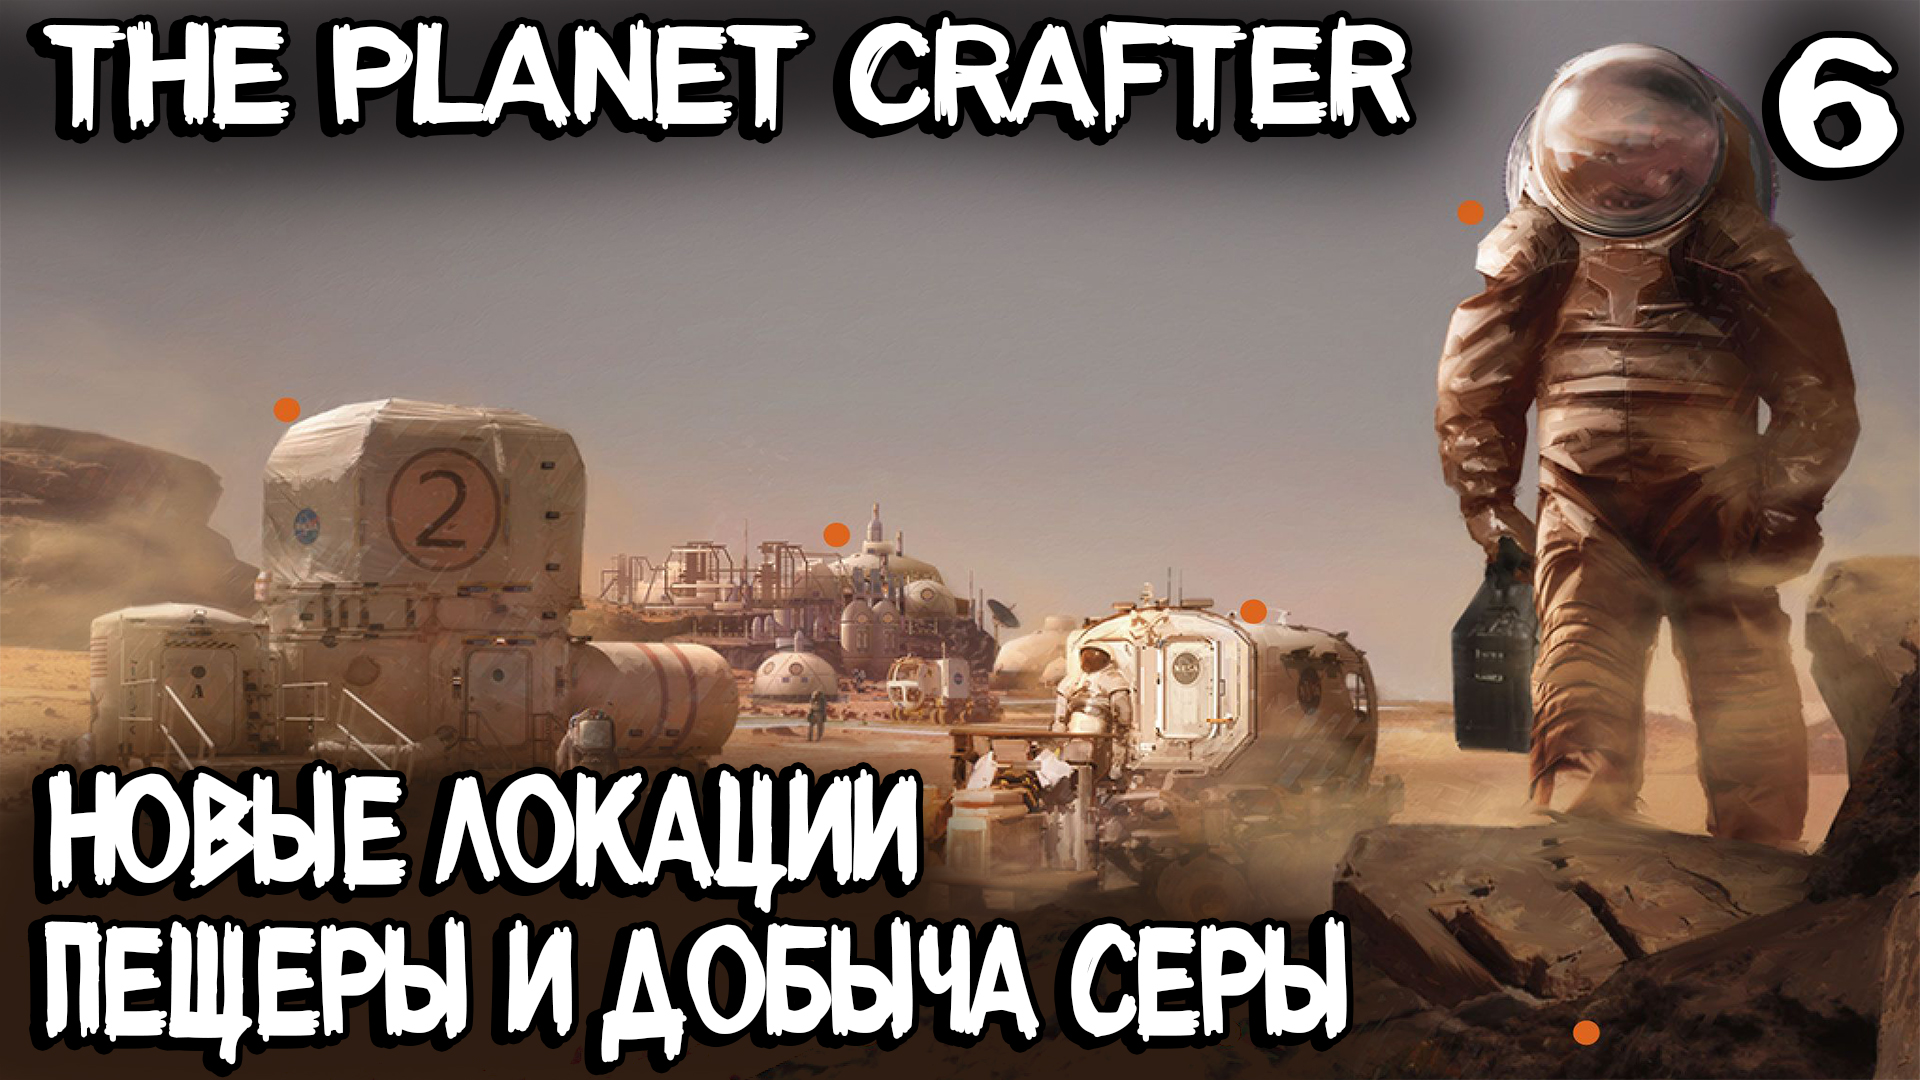 The Planet Crafter - выживание. Добыча серы, осмиевые пещеры и новая биолаборатория #6